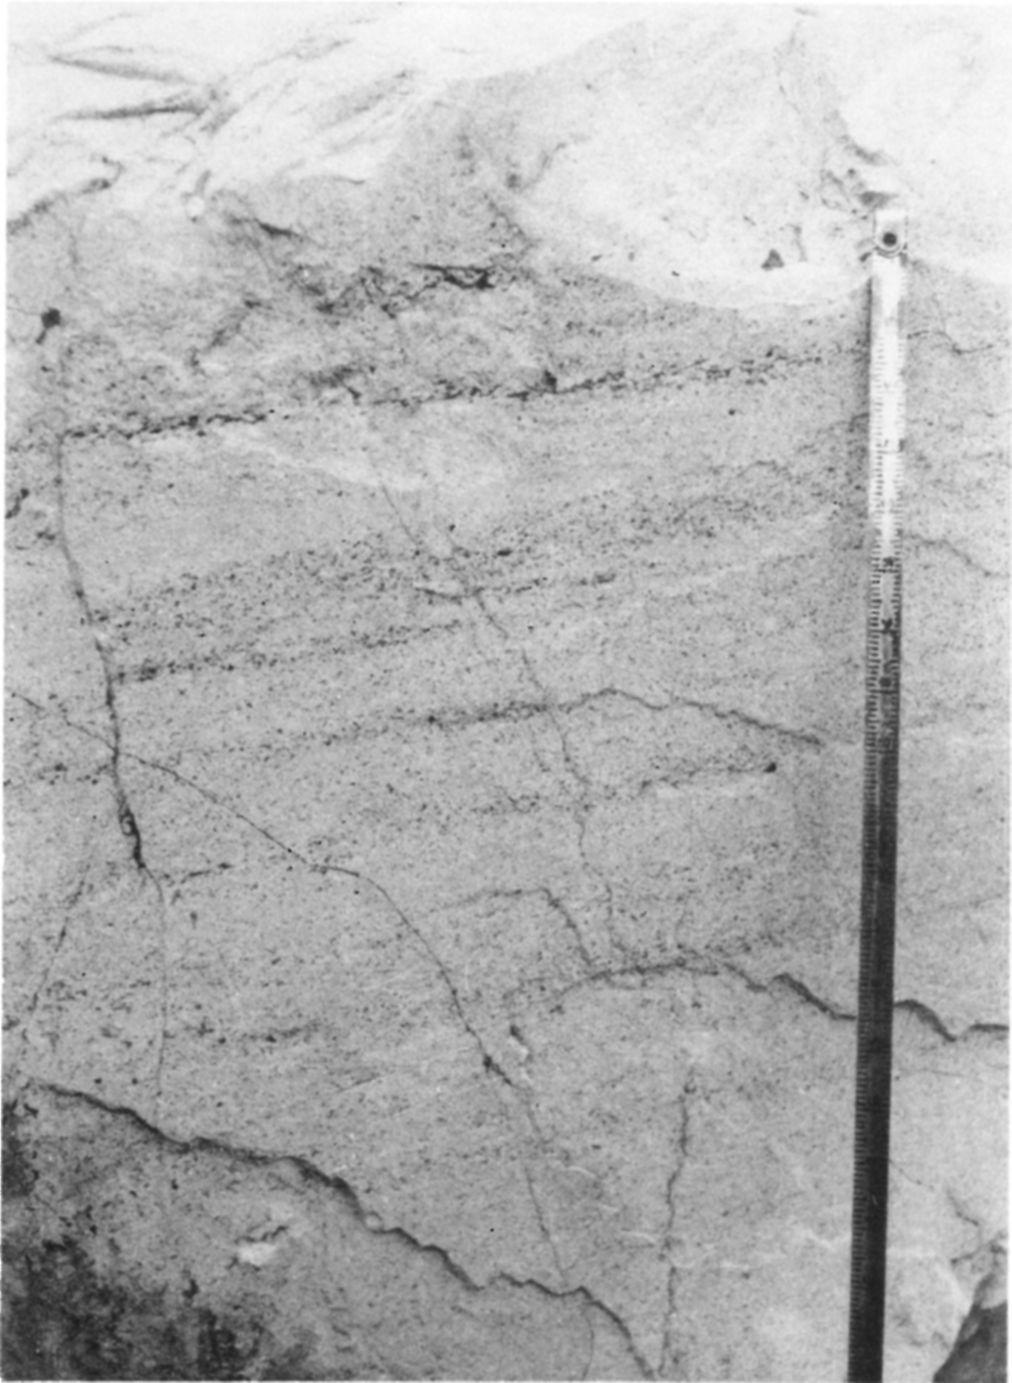 kép), 5,0-7,0 m közt márgás közbetelepüléssel, amelyben szórt helyzetű ooidok, páttábla töredékek, szögletes vulkanittöredékek és homokkő darabkák láthatók.